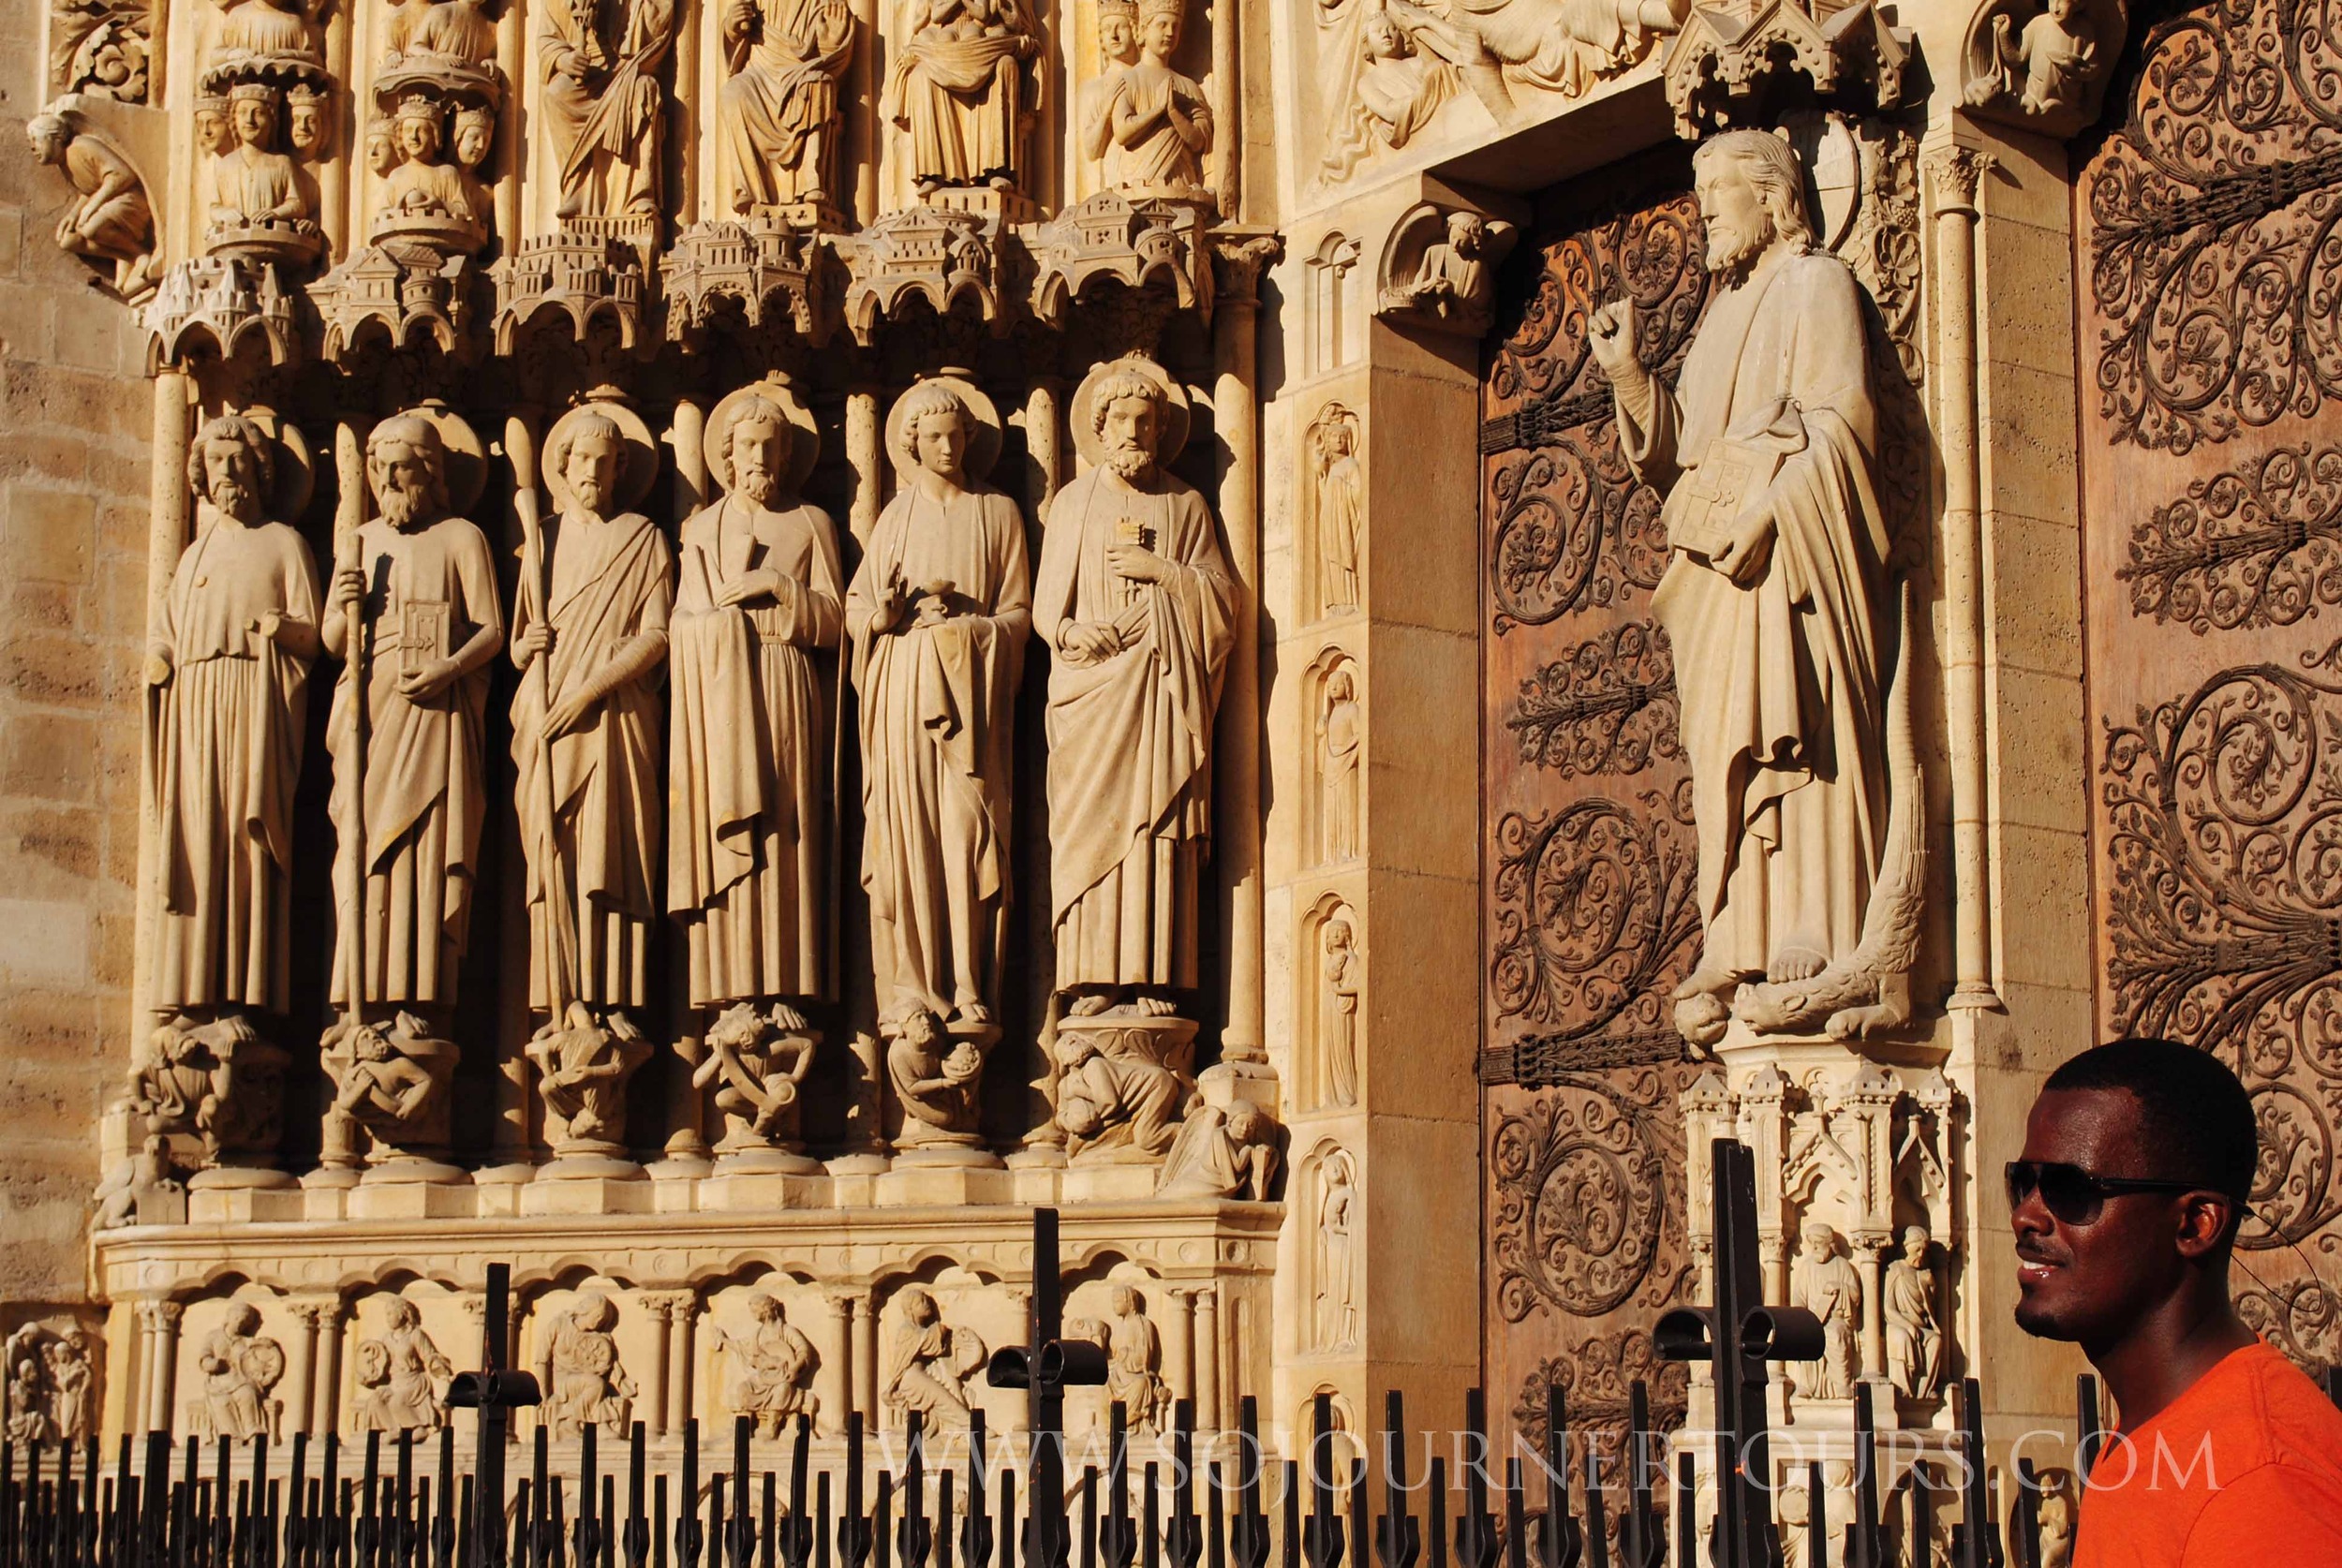 Notre Dame: Paris, France (Sojourner Tours)